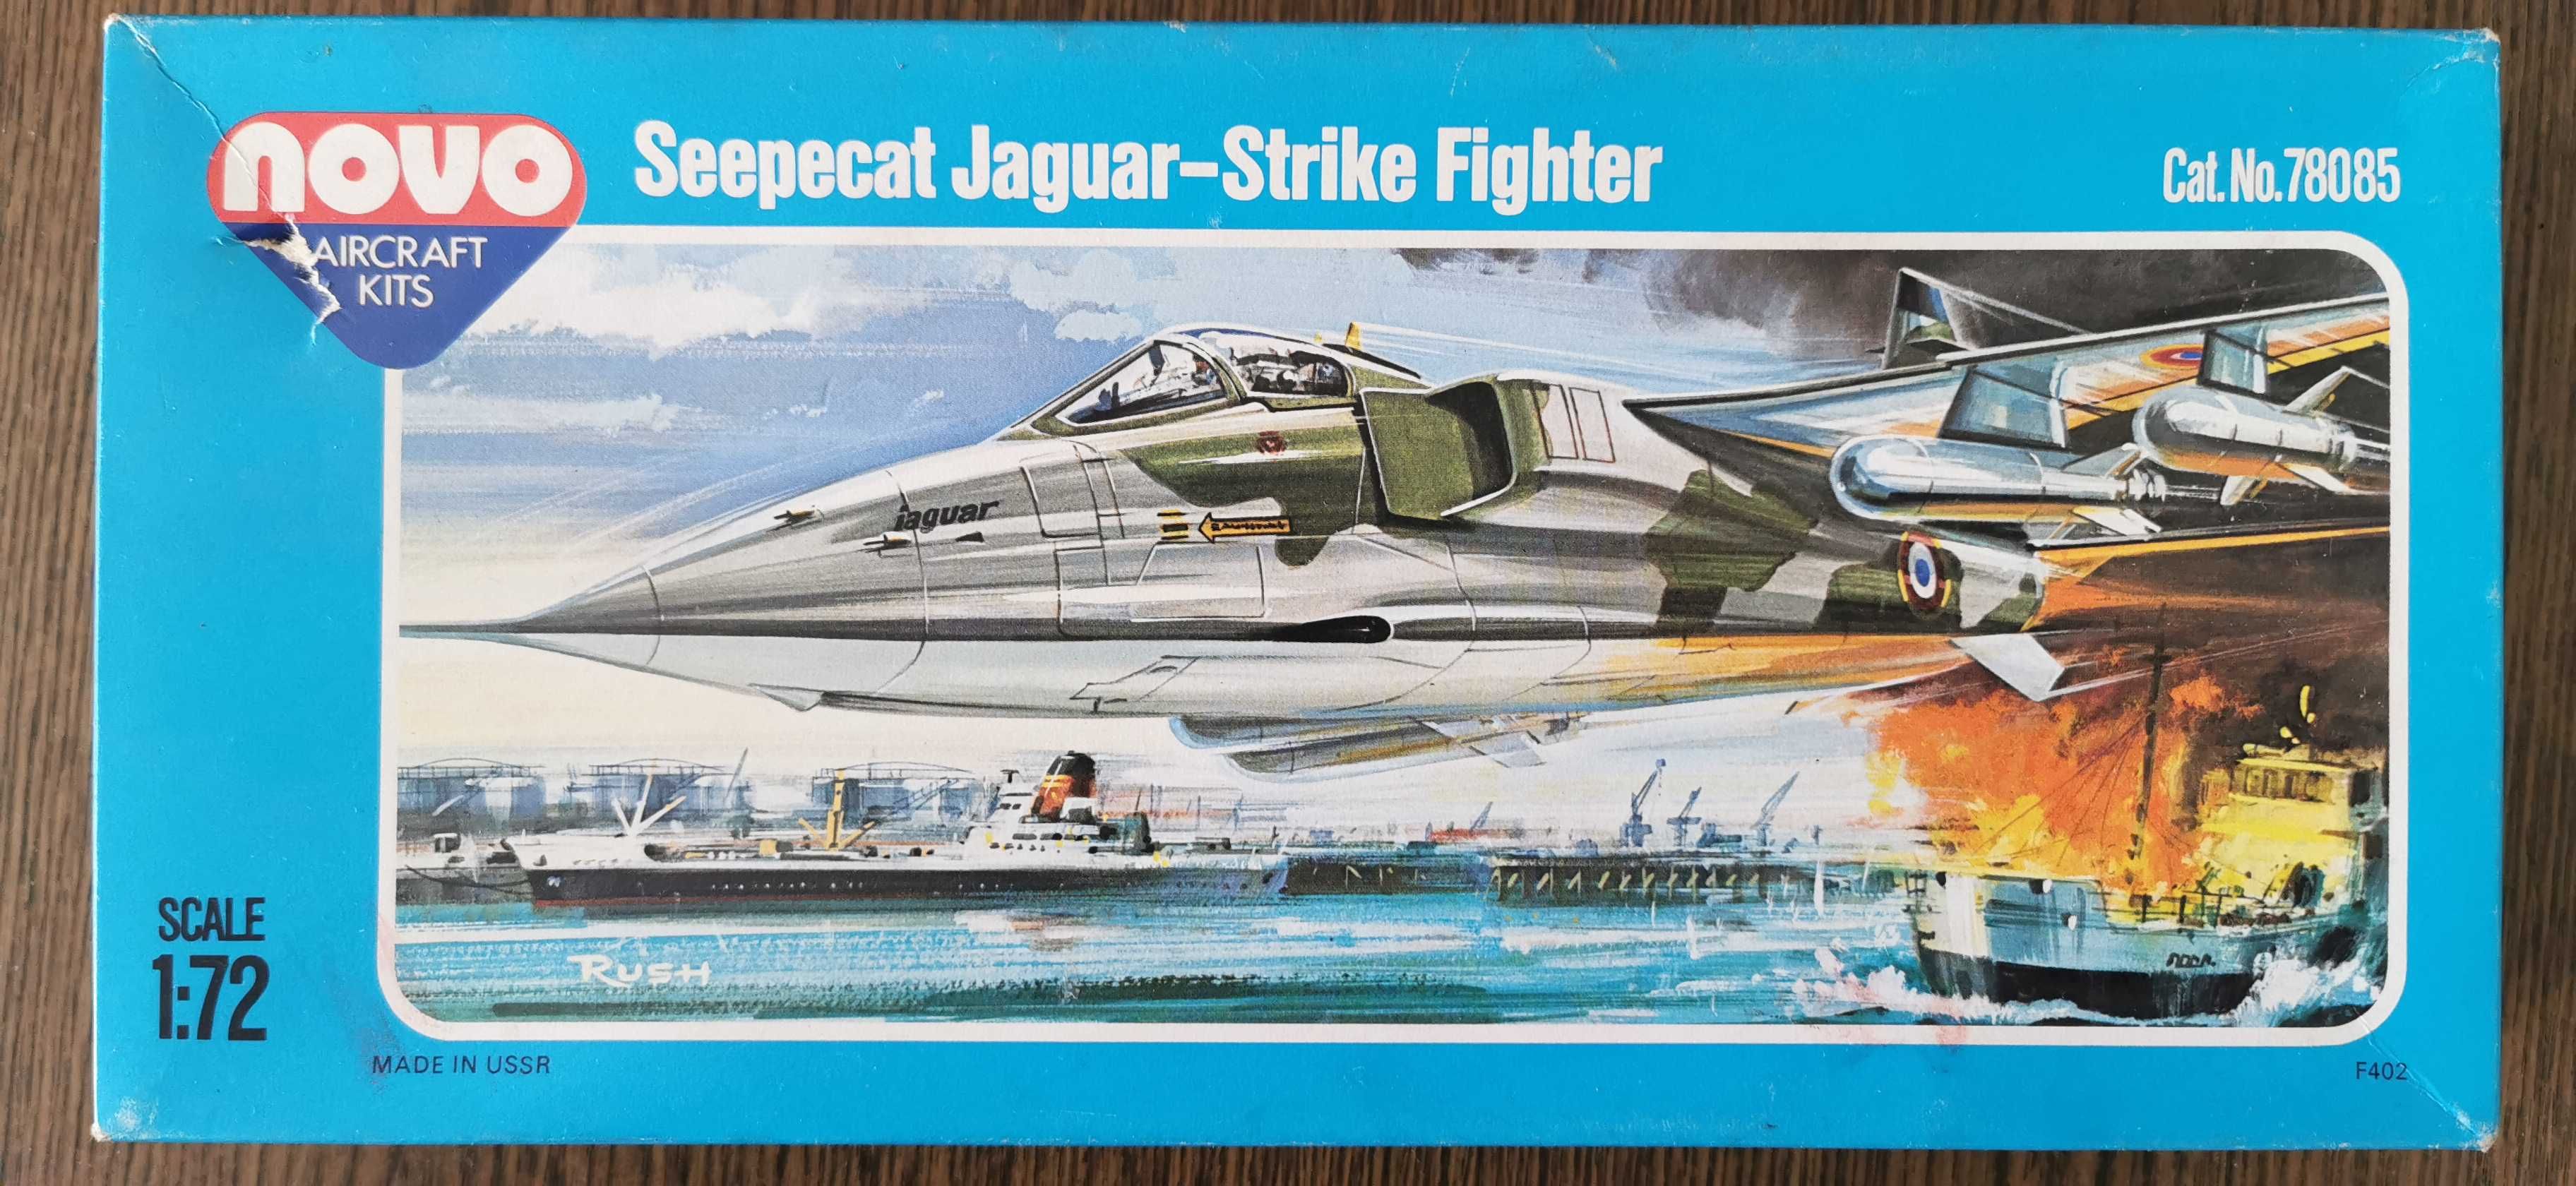 WYPRZEDAŻ Sprzedam model NOVO Seepecat Jaguar-Strike Fighter 1/72